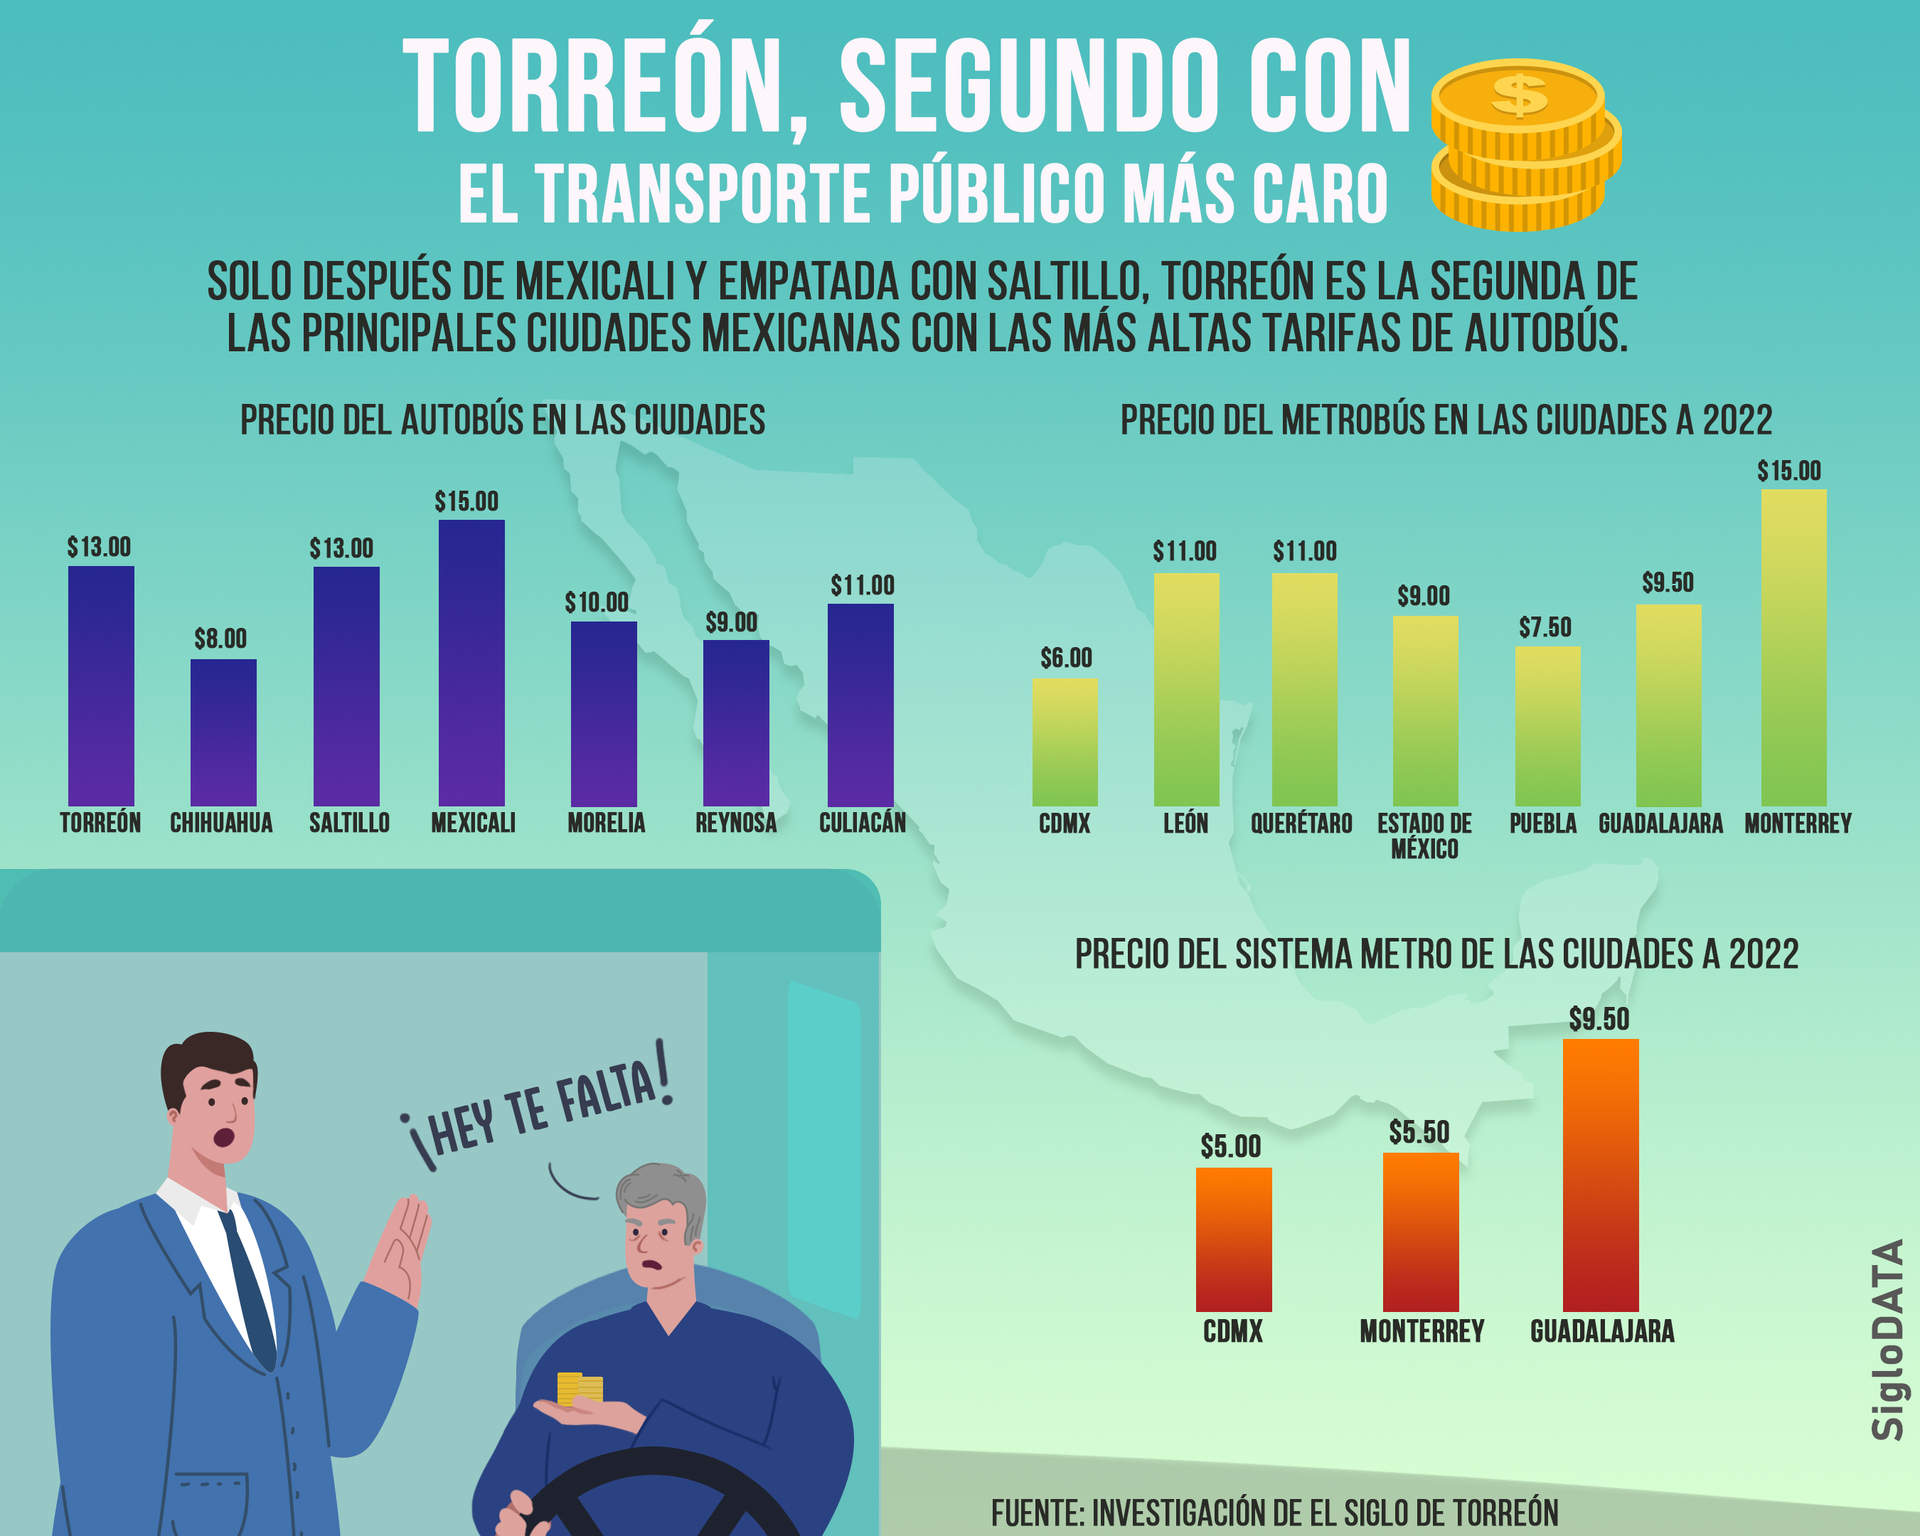 Torreón, segunda ciudad de México con el transporte público más caro